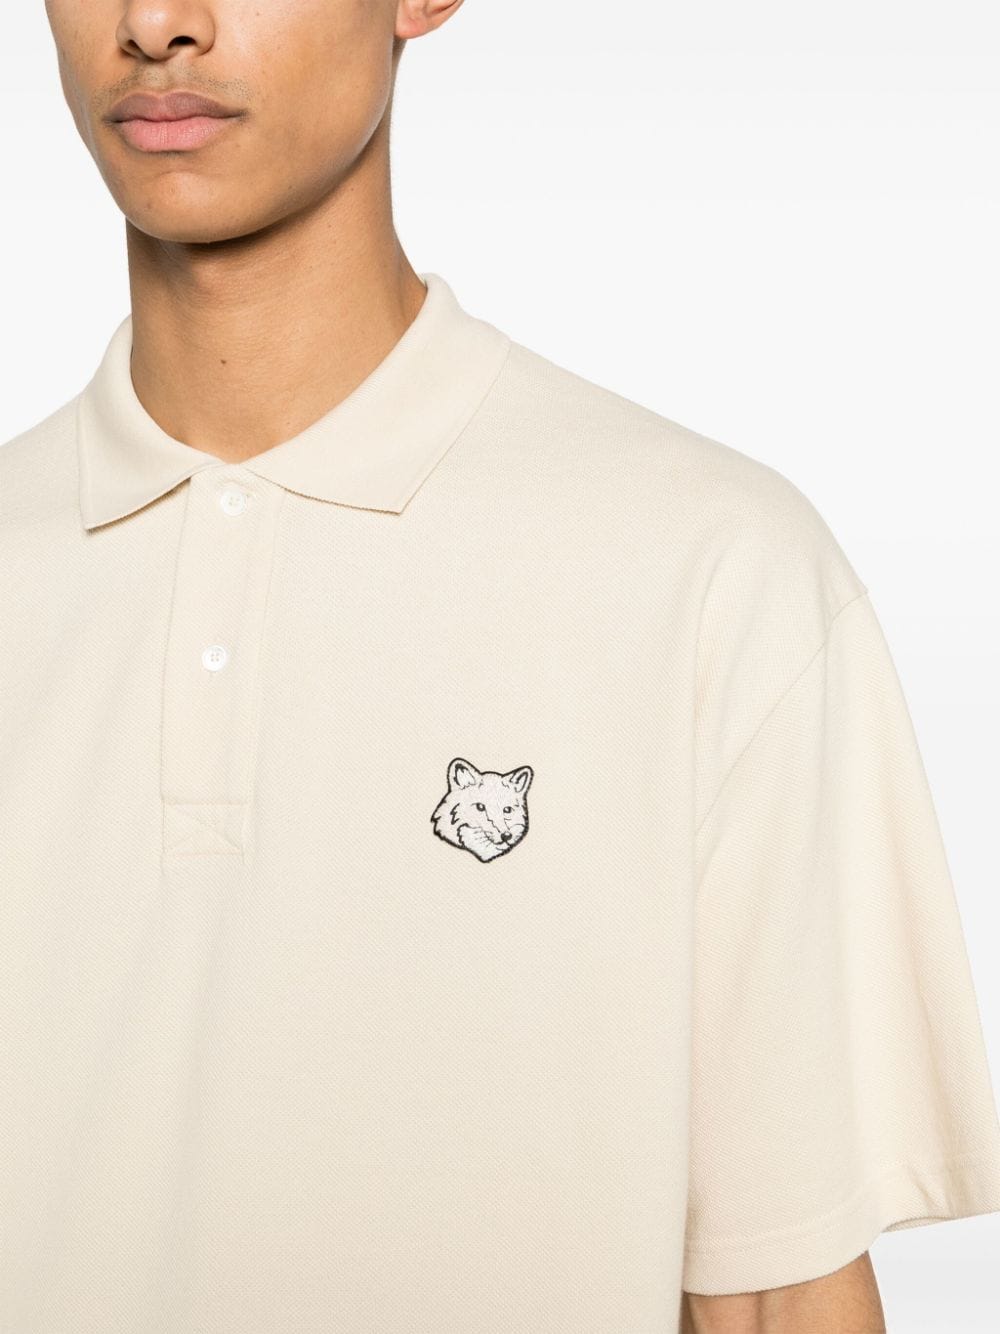 Fox-motif cotton polo shirt<BR/><BR/><BR/>